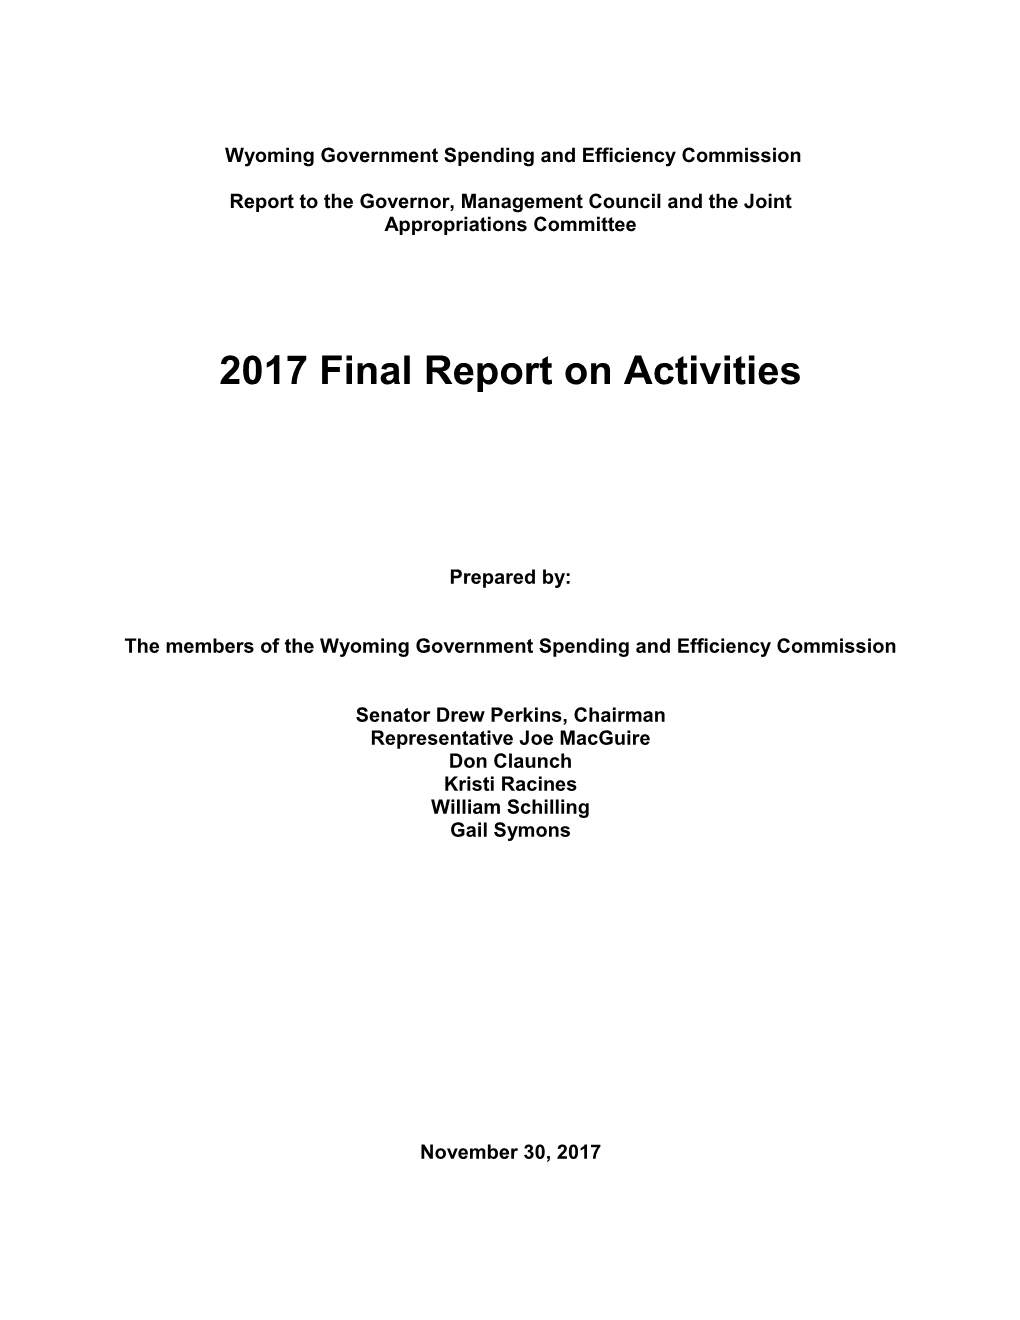 2017 Final Report on Activities